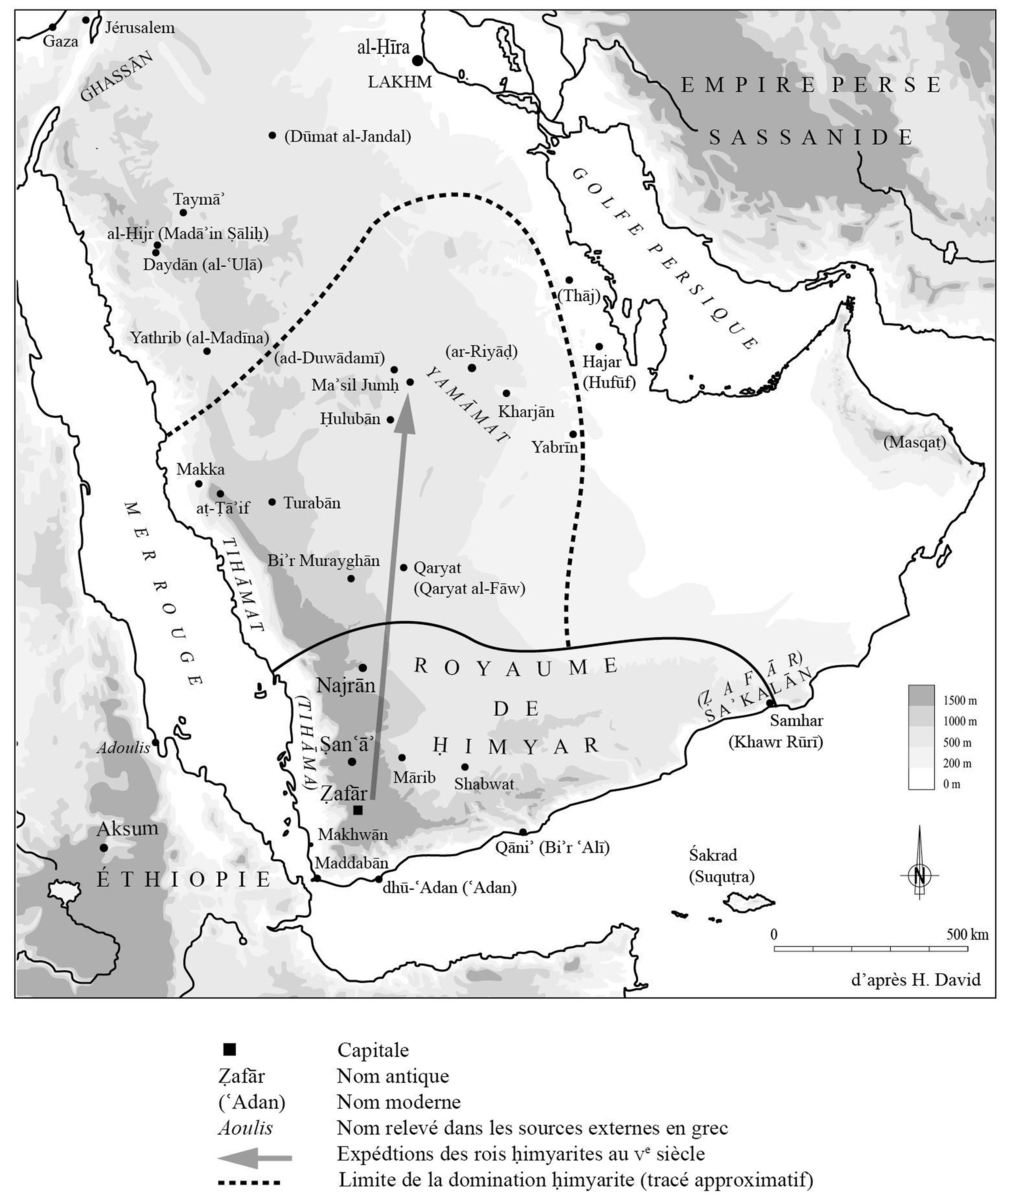 L'expansion du royaume himyarite aux IVe-Ve siècles